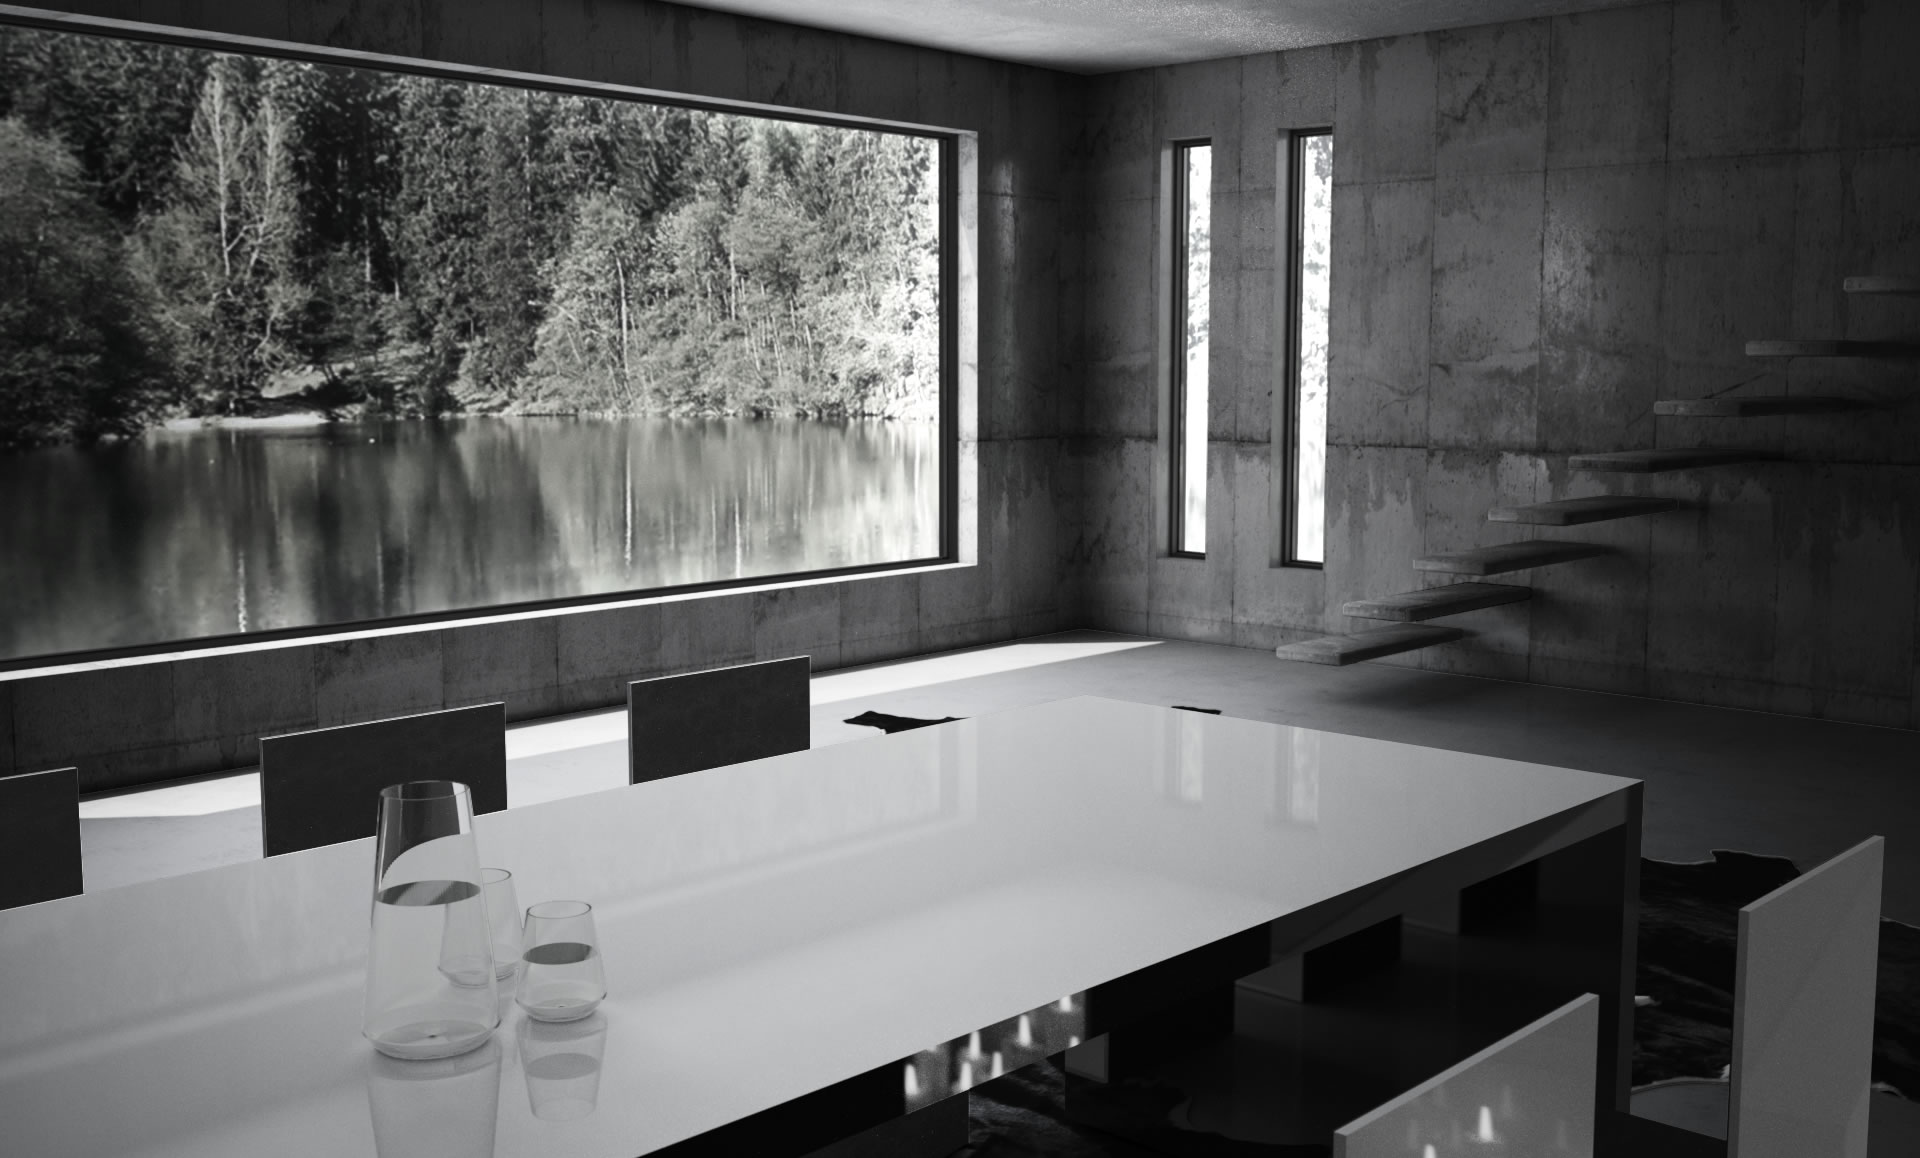 Tisch Küchentisch Esstisch schwarz-weiss lack edel modern minimalistisch Wangentisch